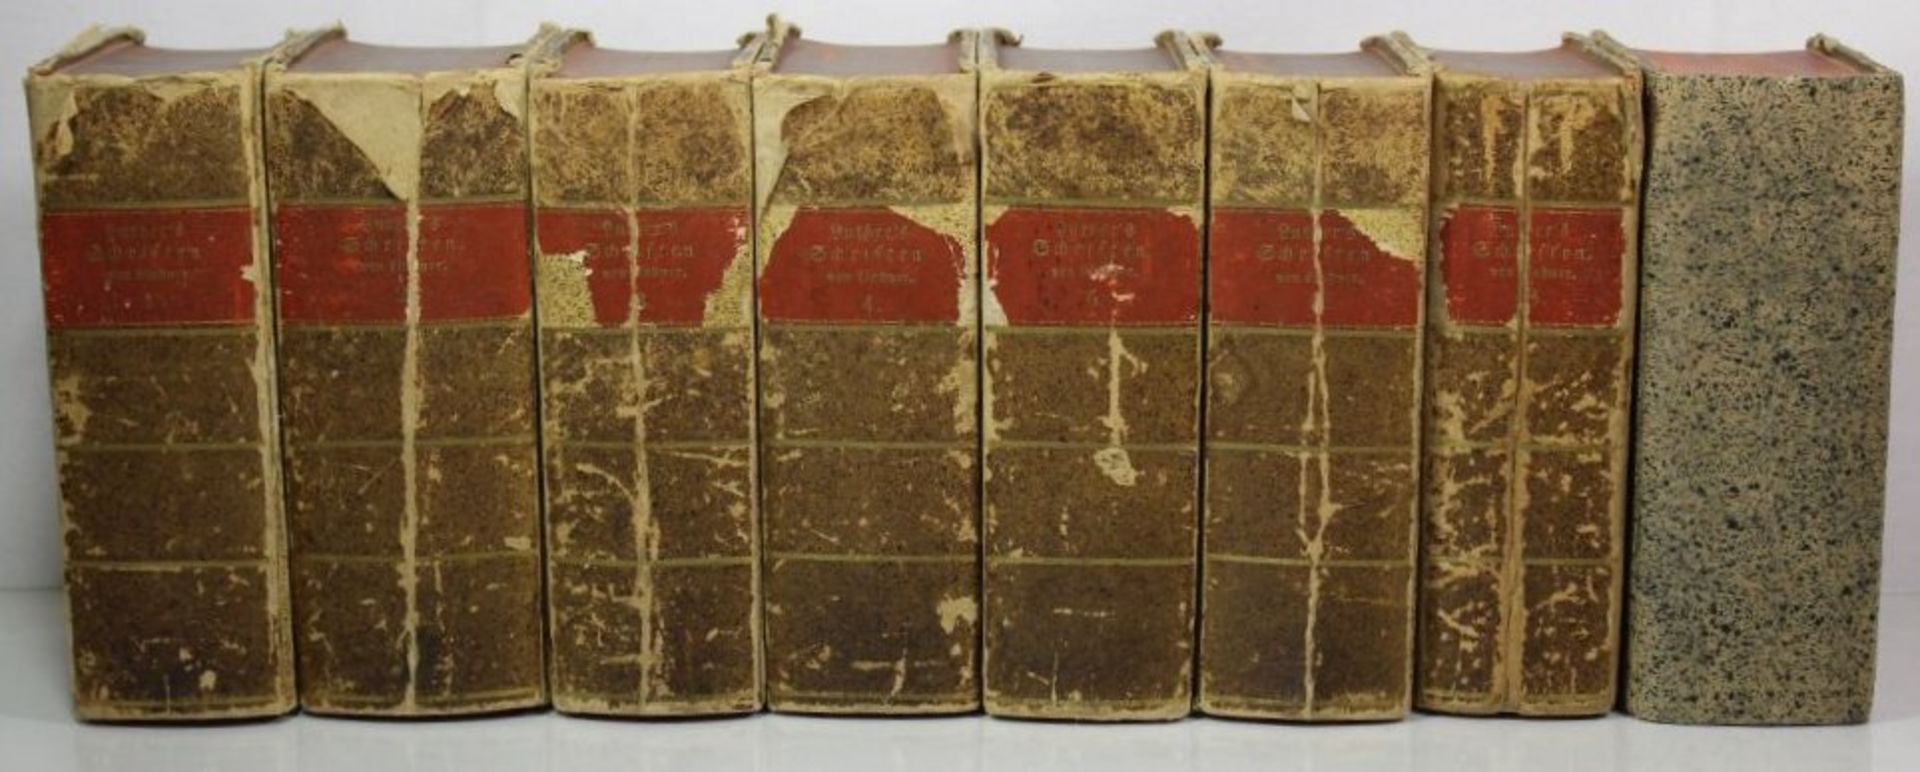 8 Bände, Luther's Schriften, 2. Auflage, 1754, Alters-u. Gebrauchsspuren.